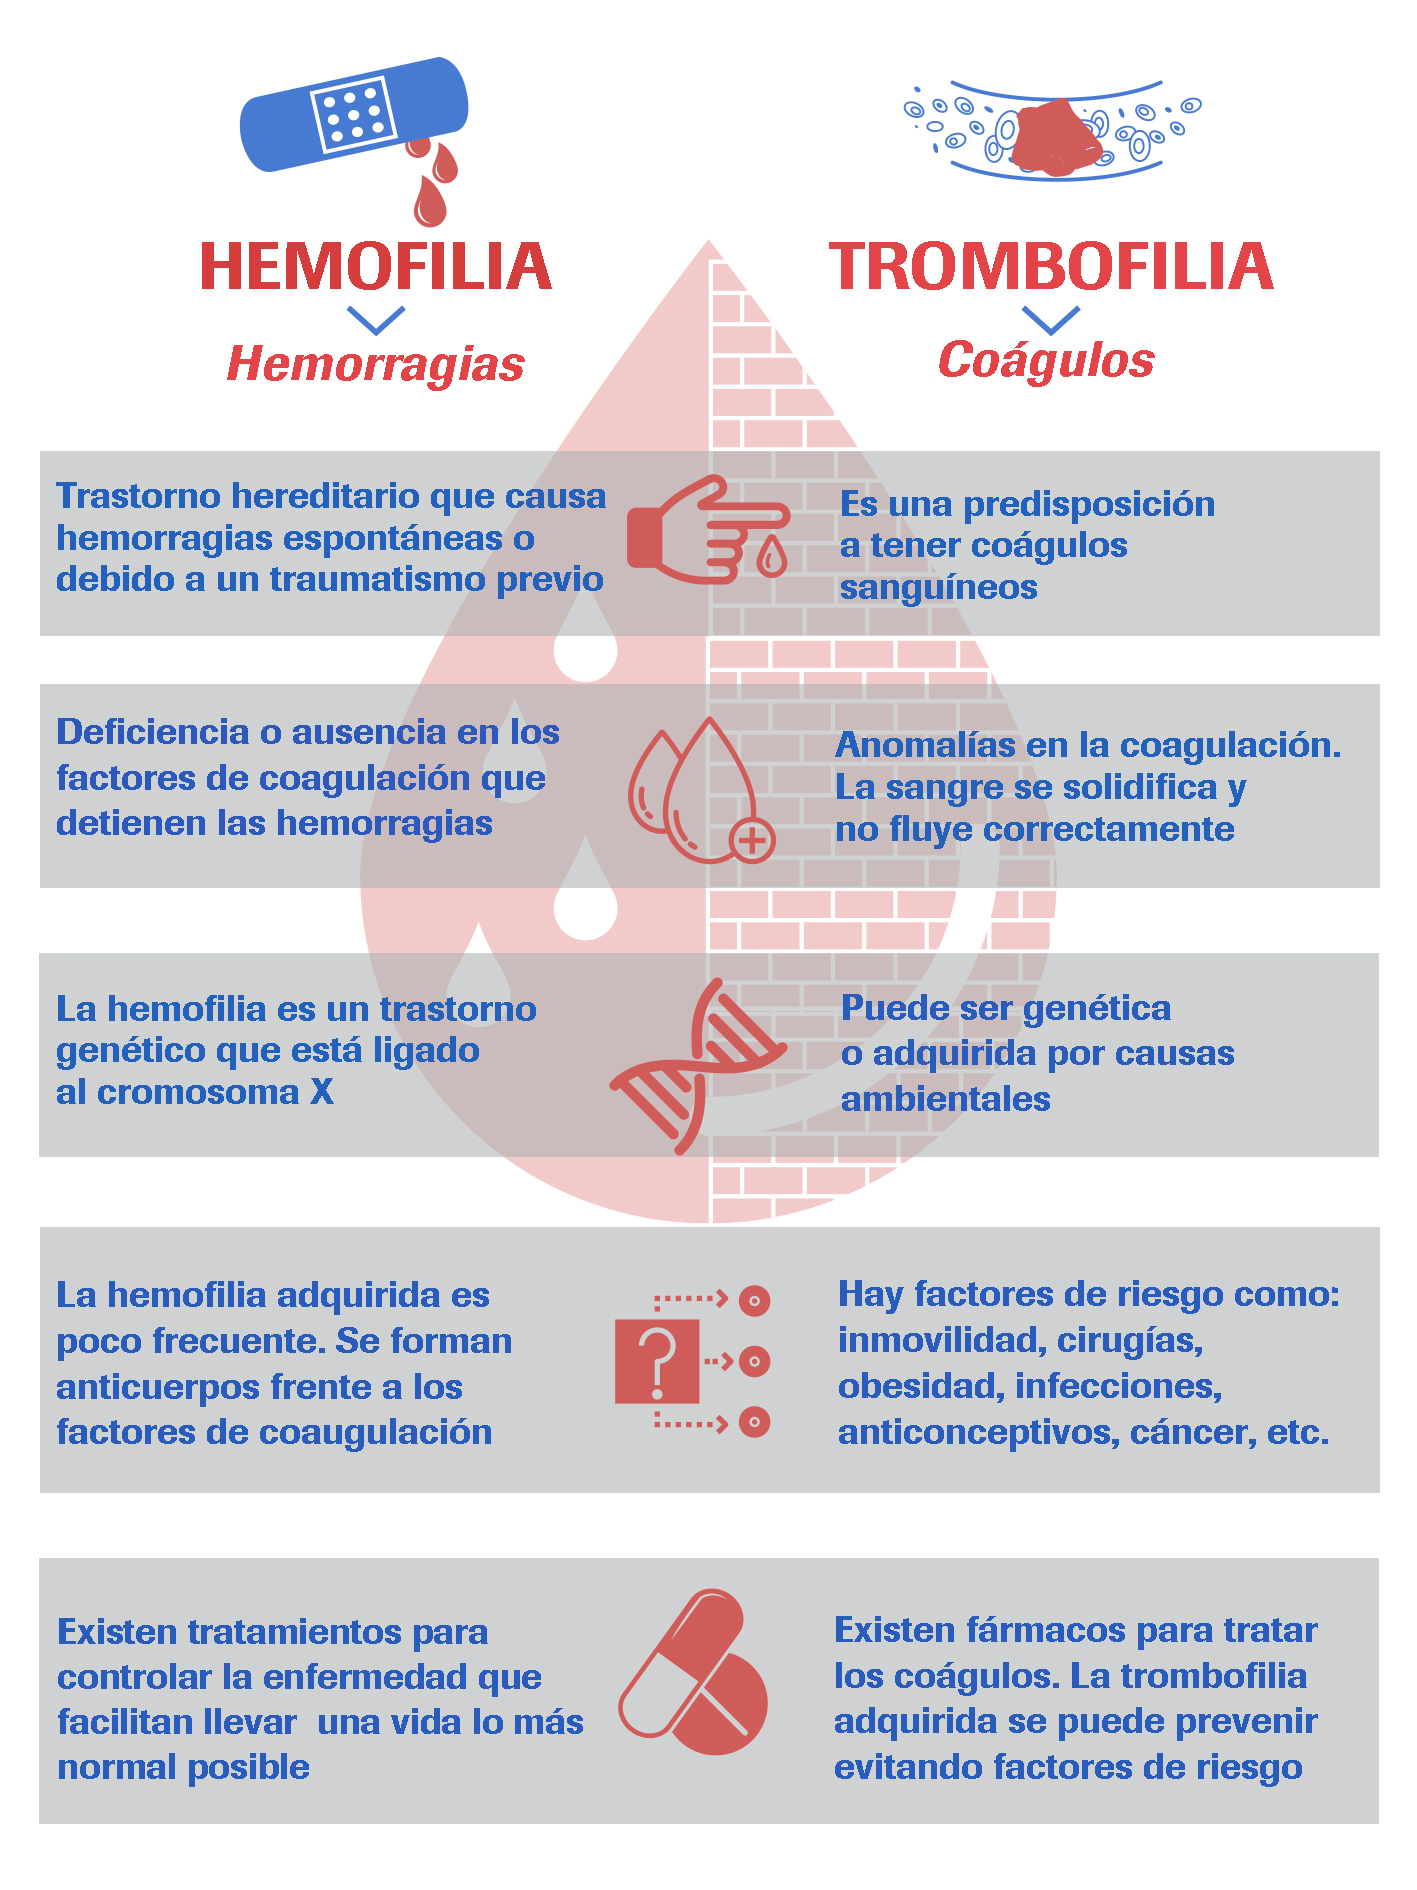 Hemorragias más comunes en la hemofilia.